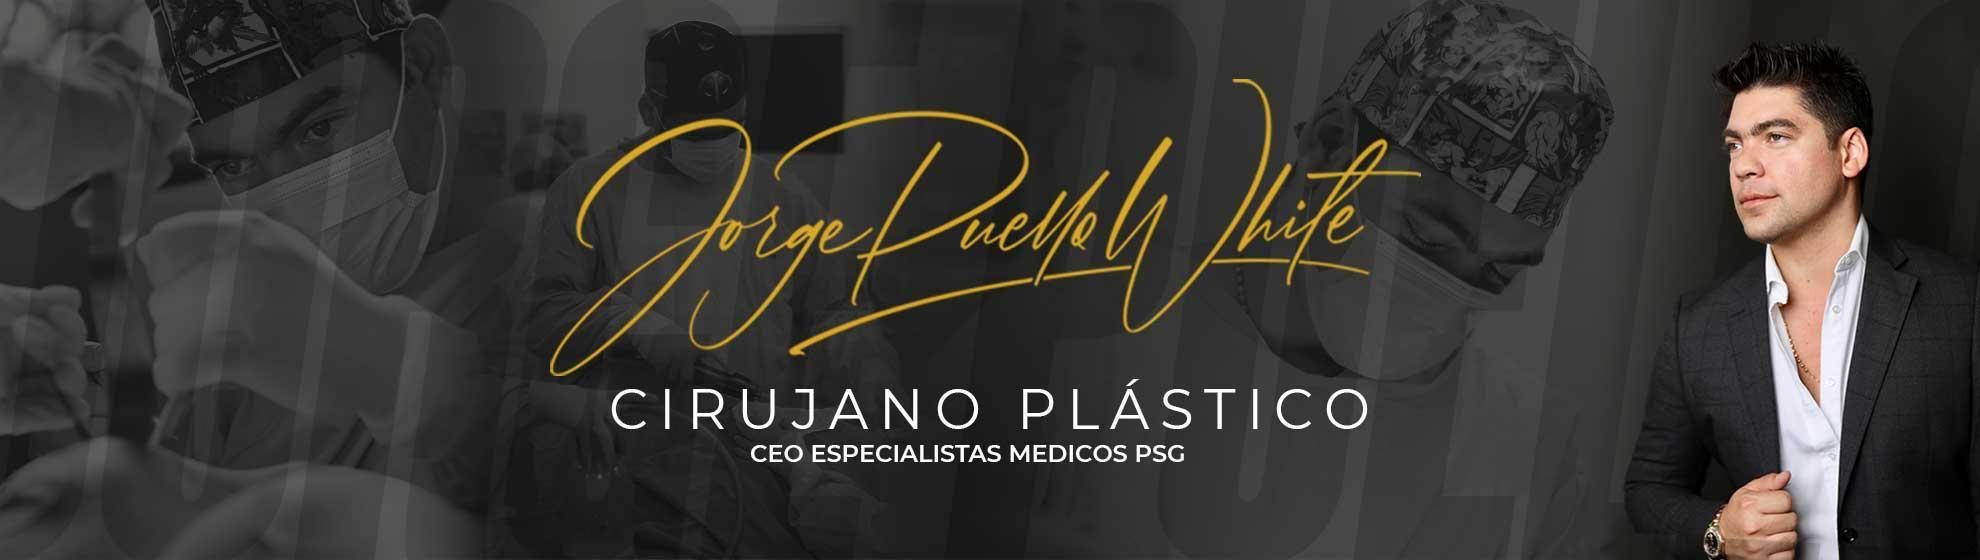 Dr. Jorge Puello White